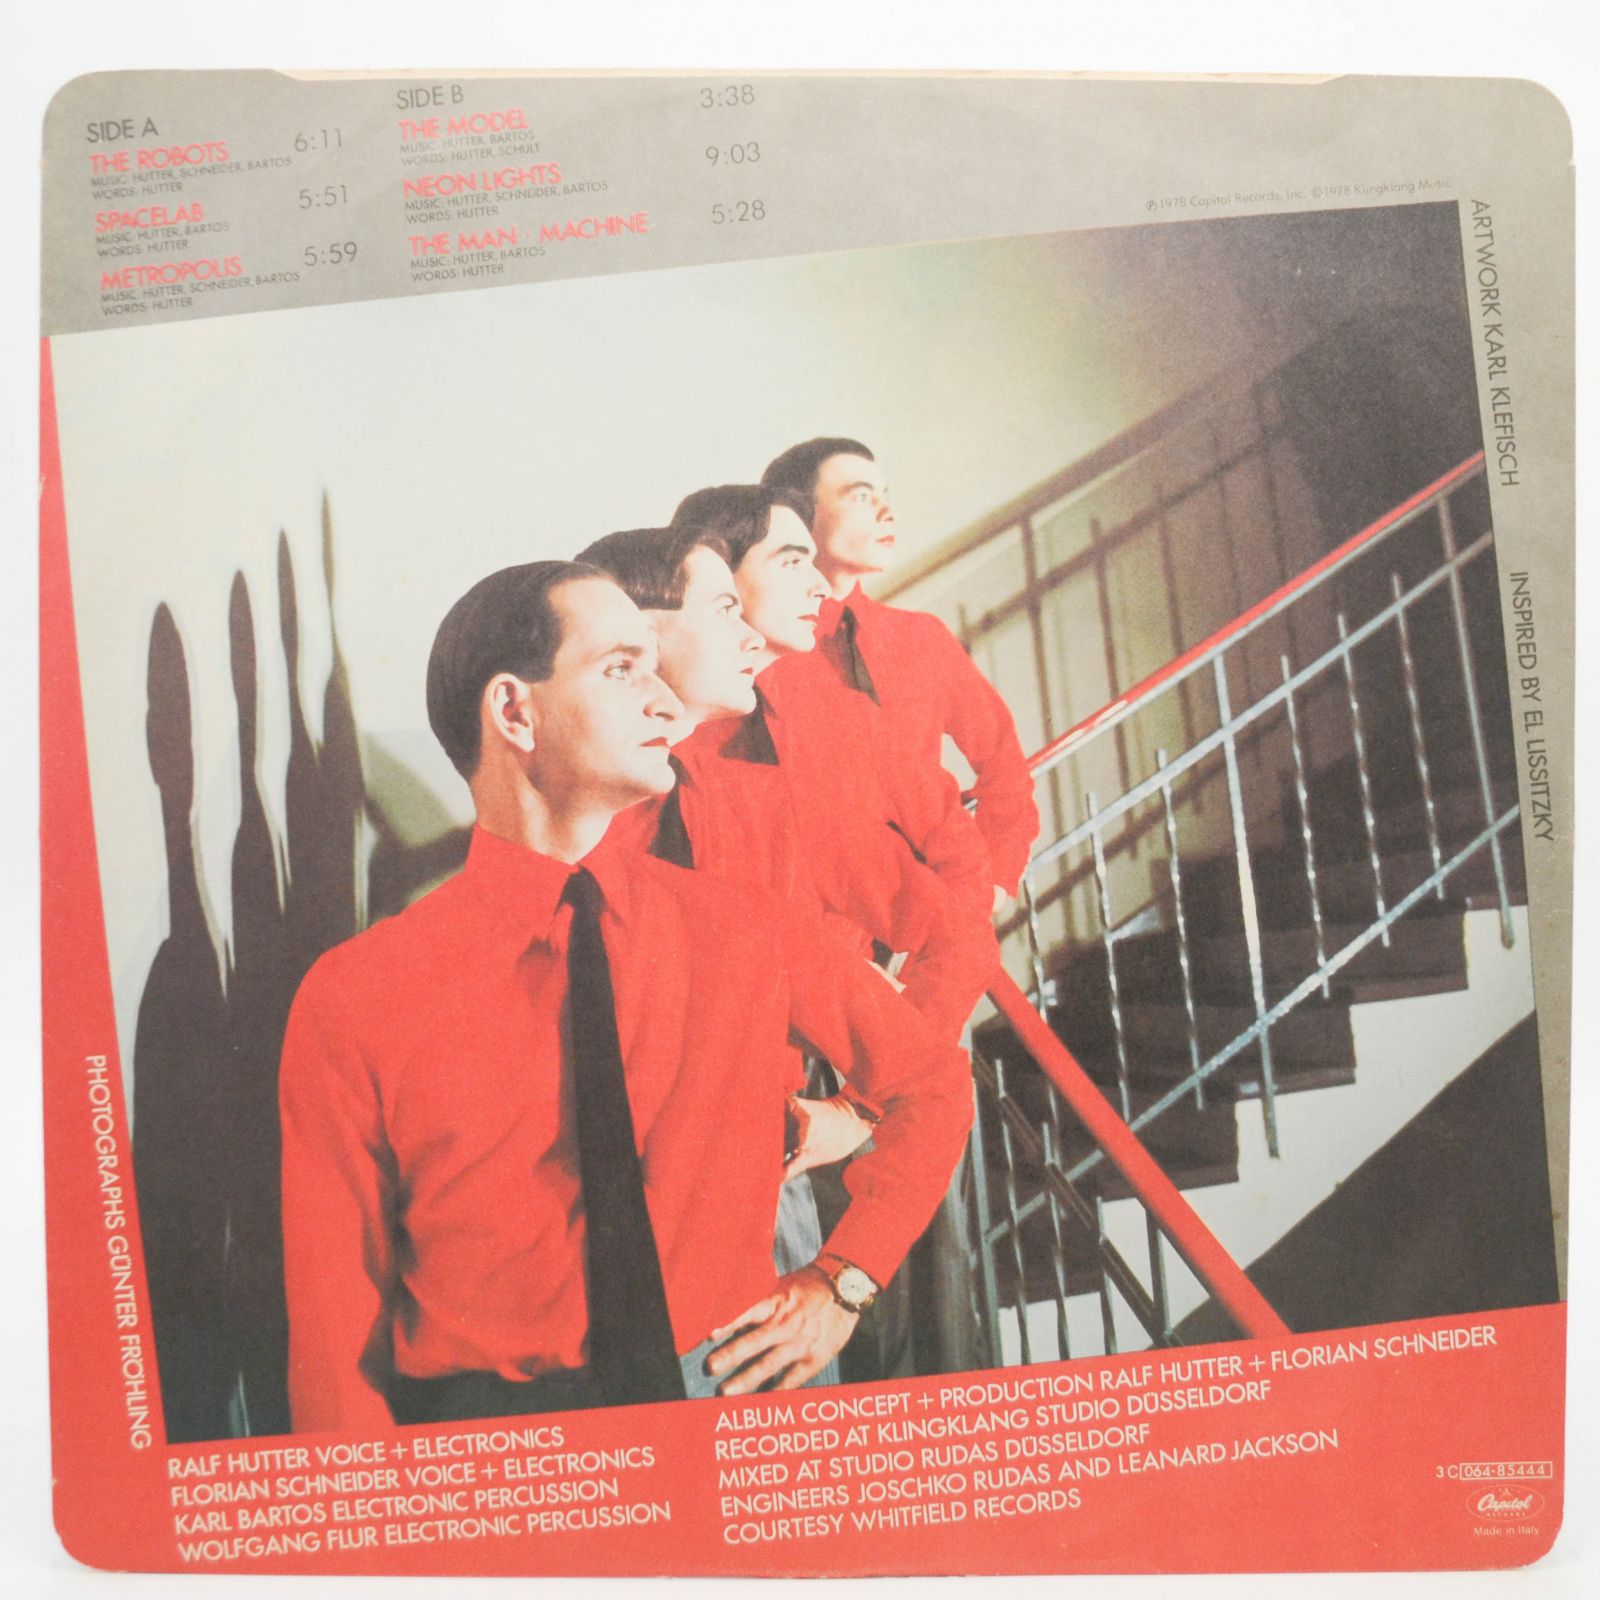 Kraftwerk — The Man • Machine, 1978